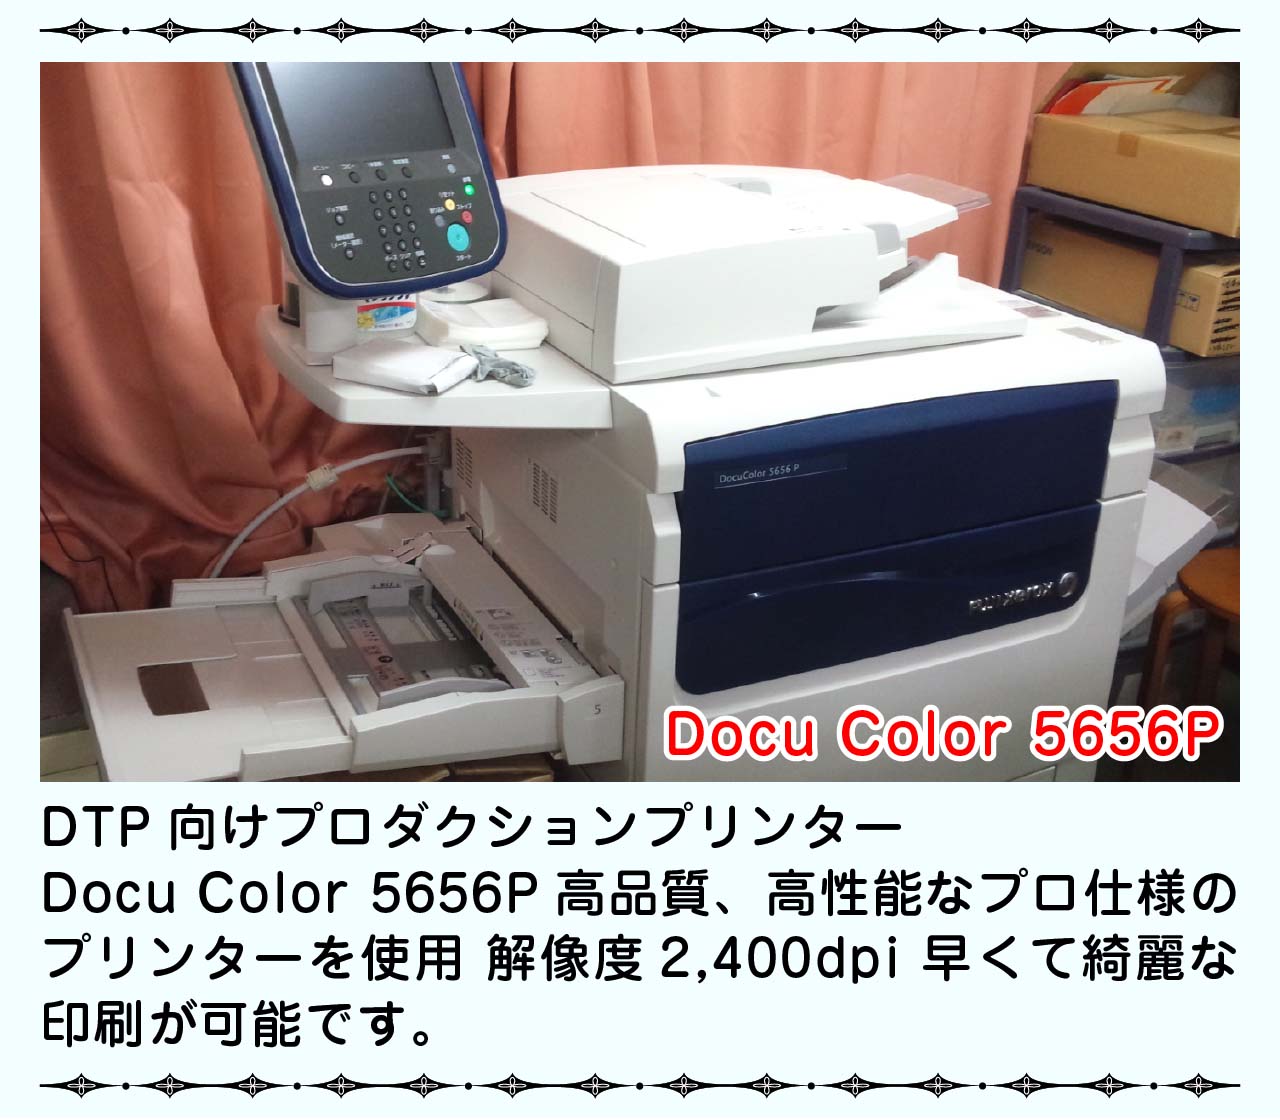 名刺の印刷は高性能DocuColor5656pにておこなっています。